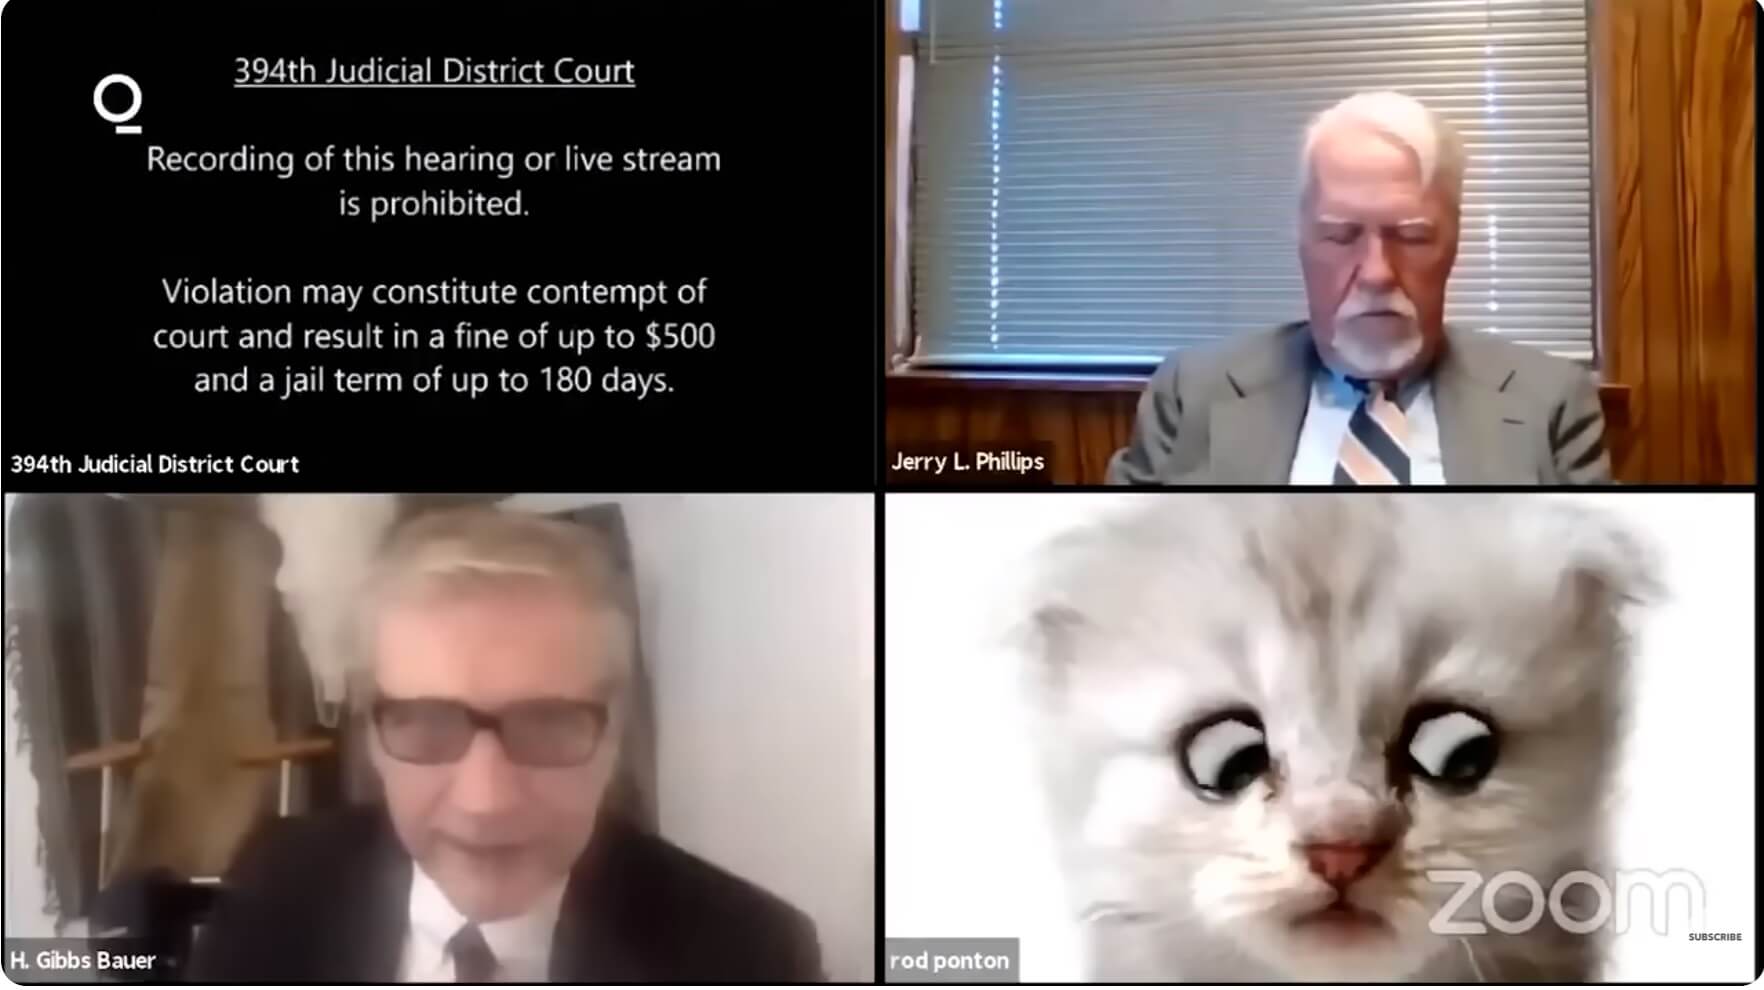 "אני לא חתול" עו"ד מטקסס הסתבך עם הפילטר במהלך משפט בזום. צילום מסך